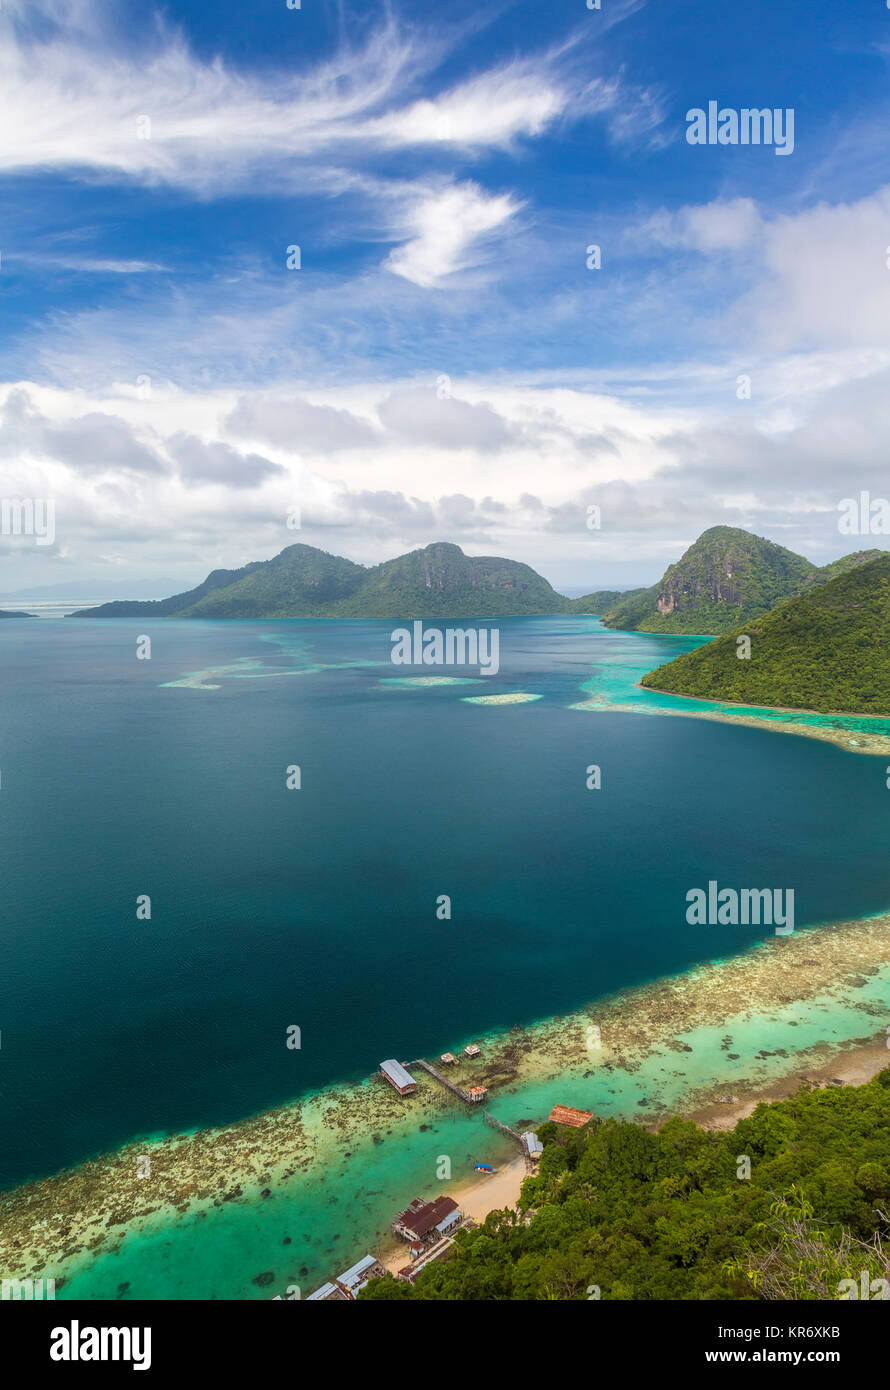 Angolo di alta vista lungo la costa di isola tropicale, montagne in distanza. Foto Stock